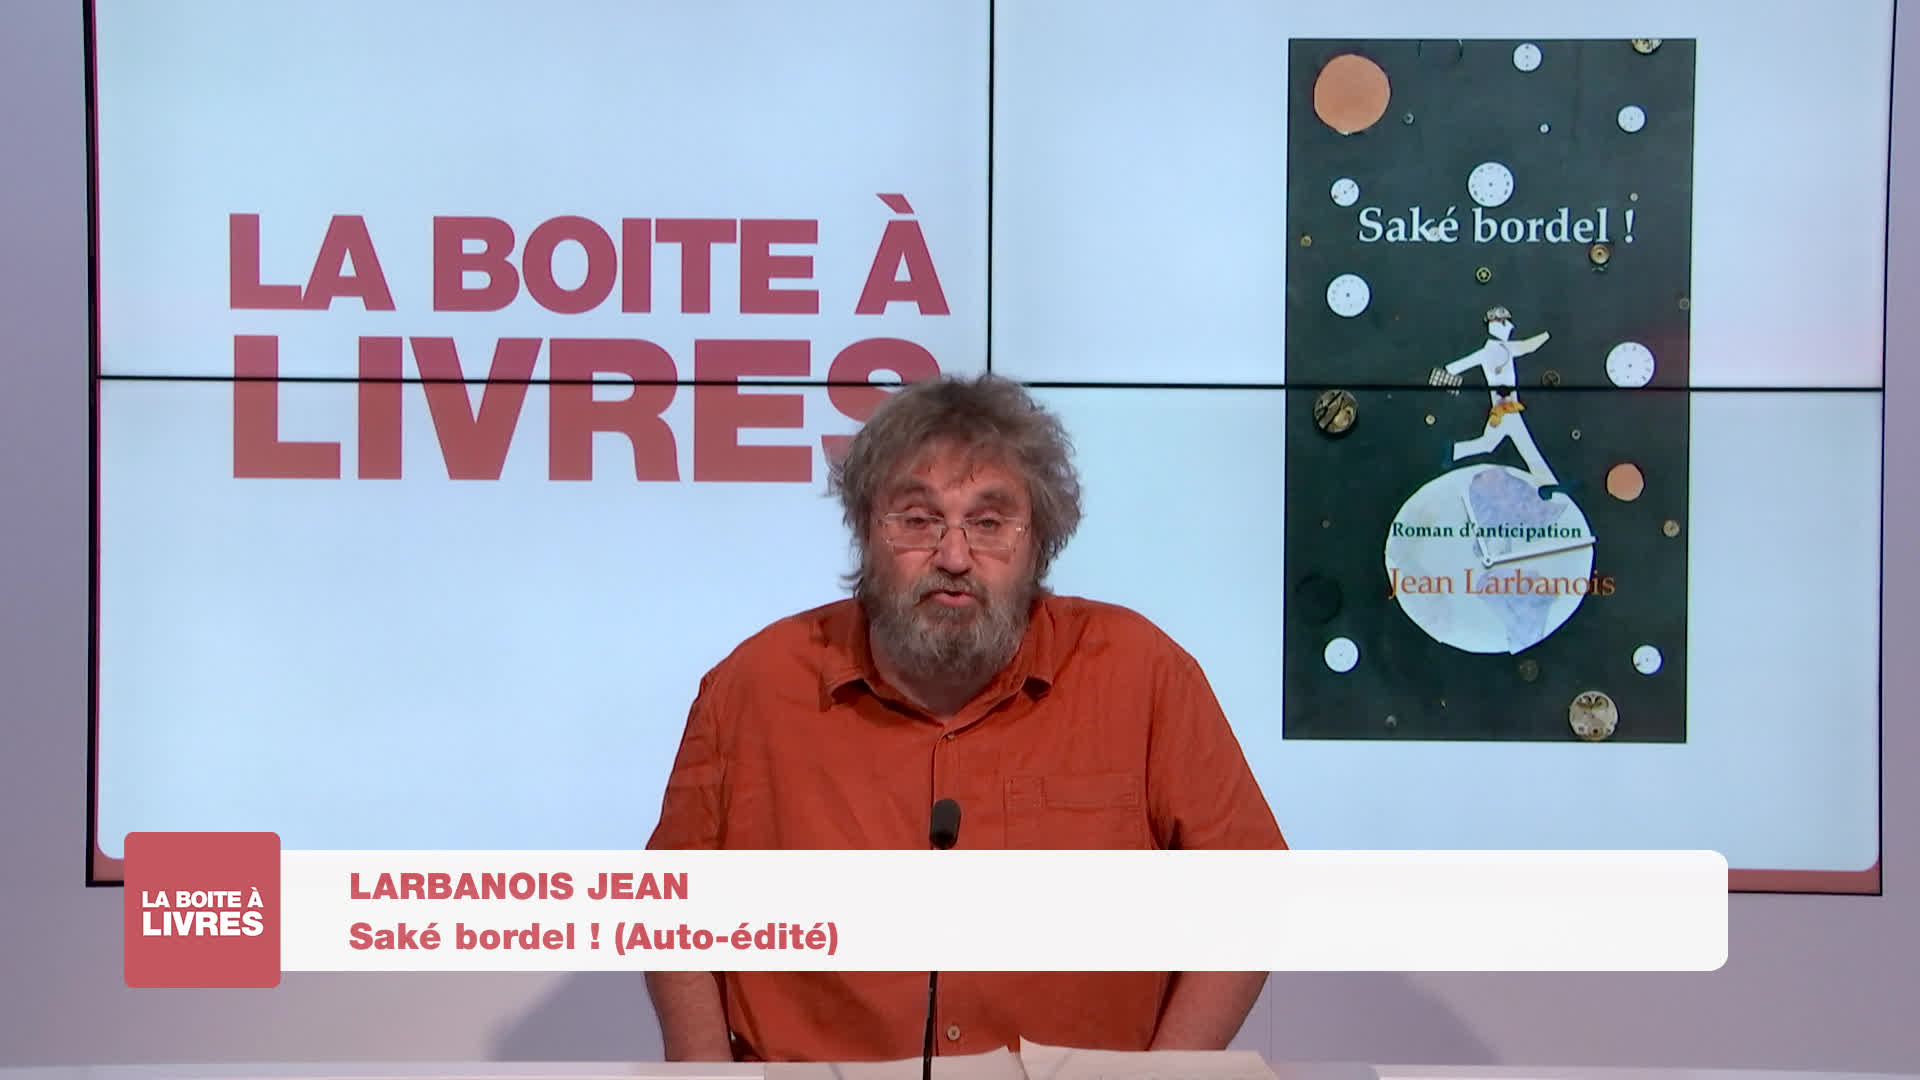 Boite à livres - Jean Larbanois, Saké bordel! (Auto-édité)